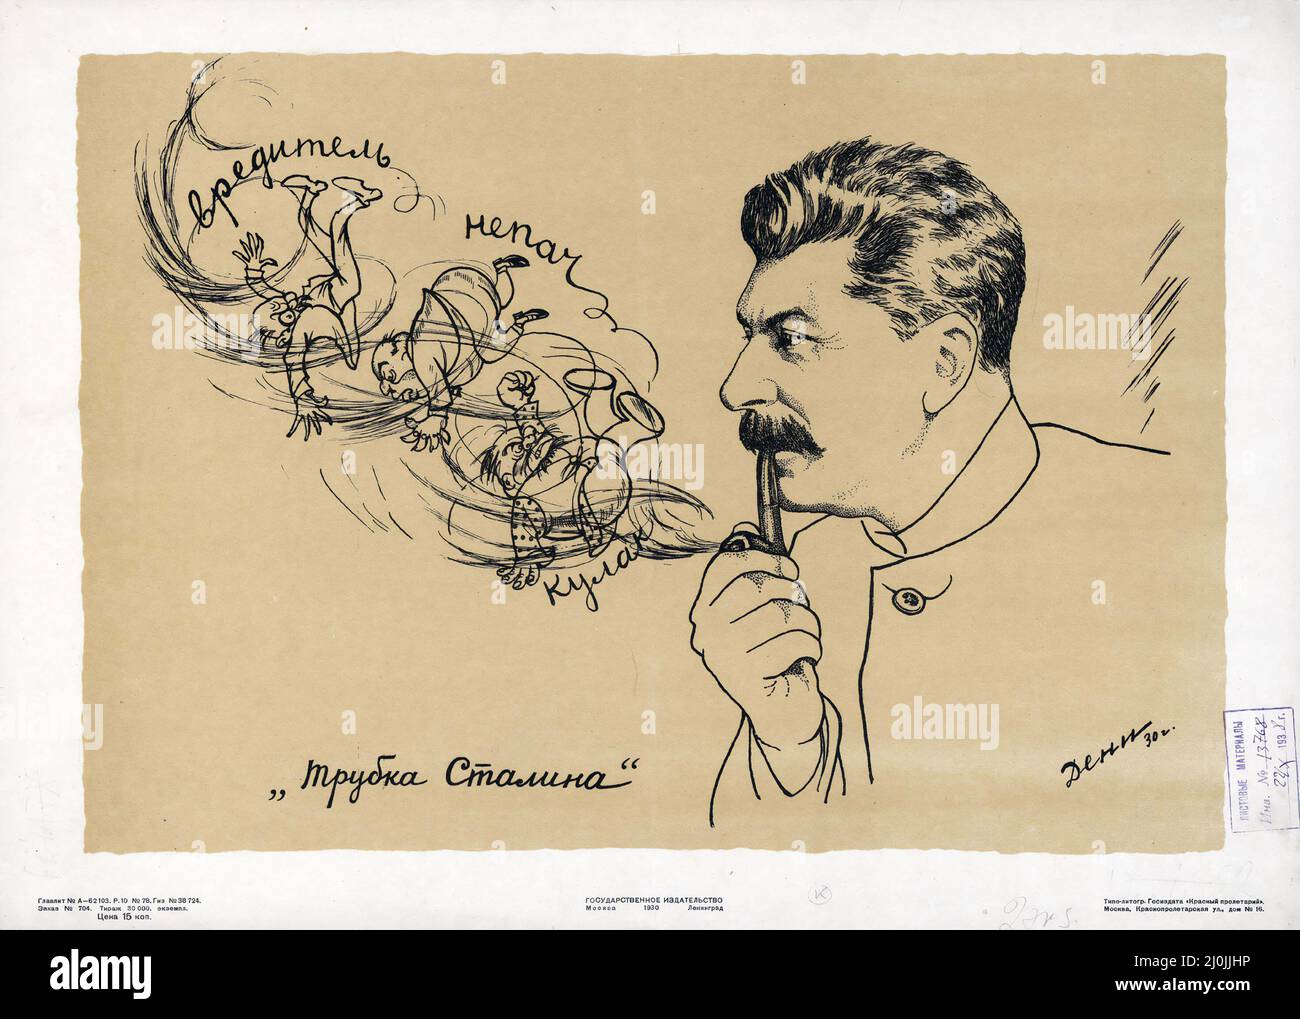 Propagande russe - affiche russe ancienne - Trubka Stalina - Josef Staline's Pipe, 1930 - œuvres de Viktor Deni (1893–1946) Banque D'Images